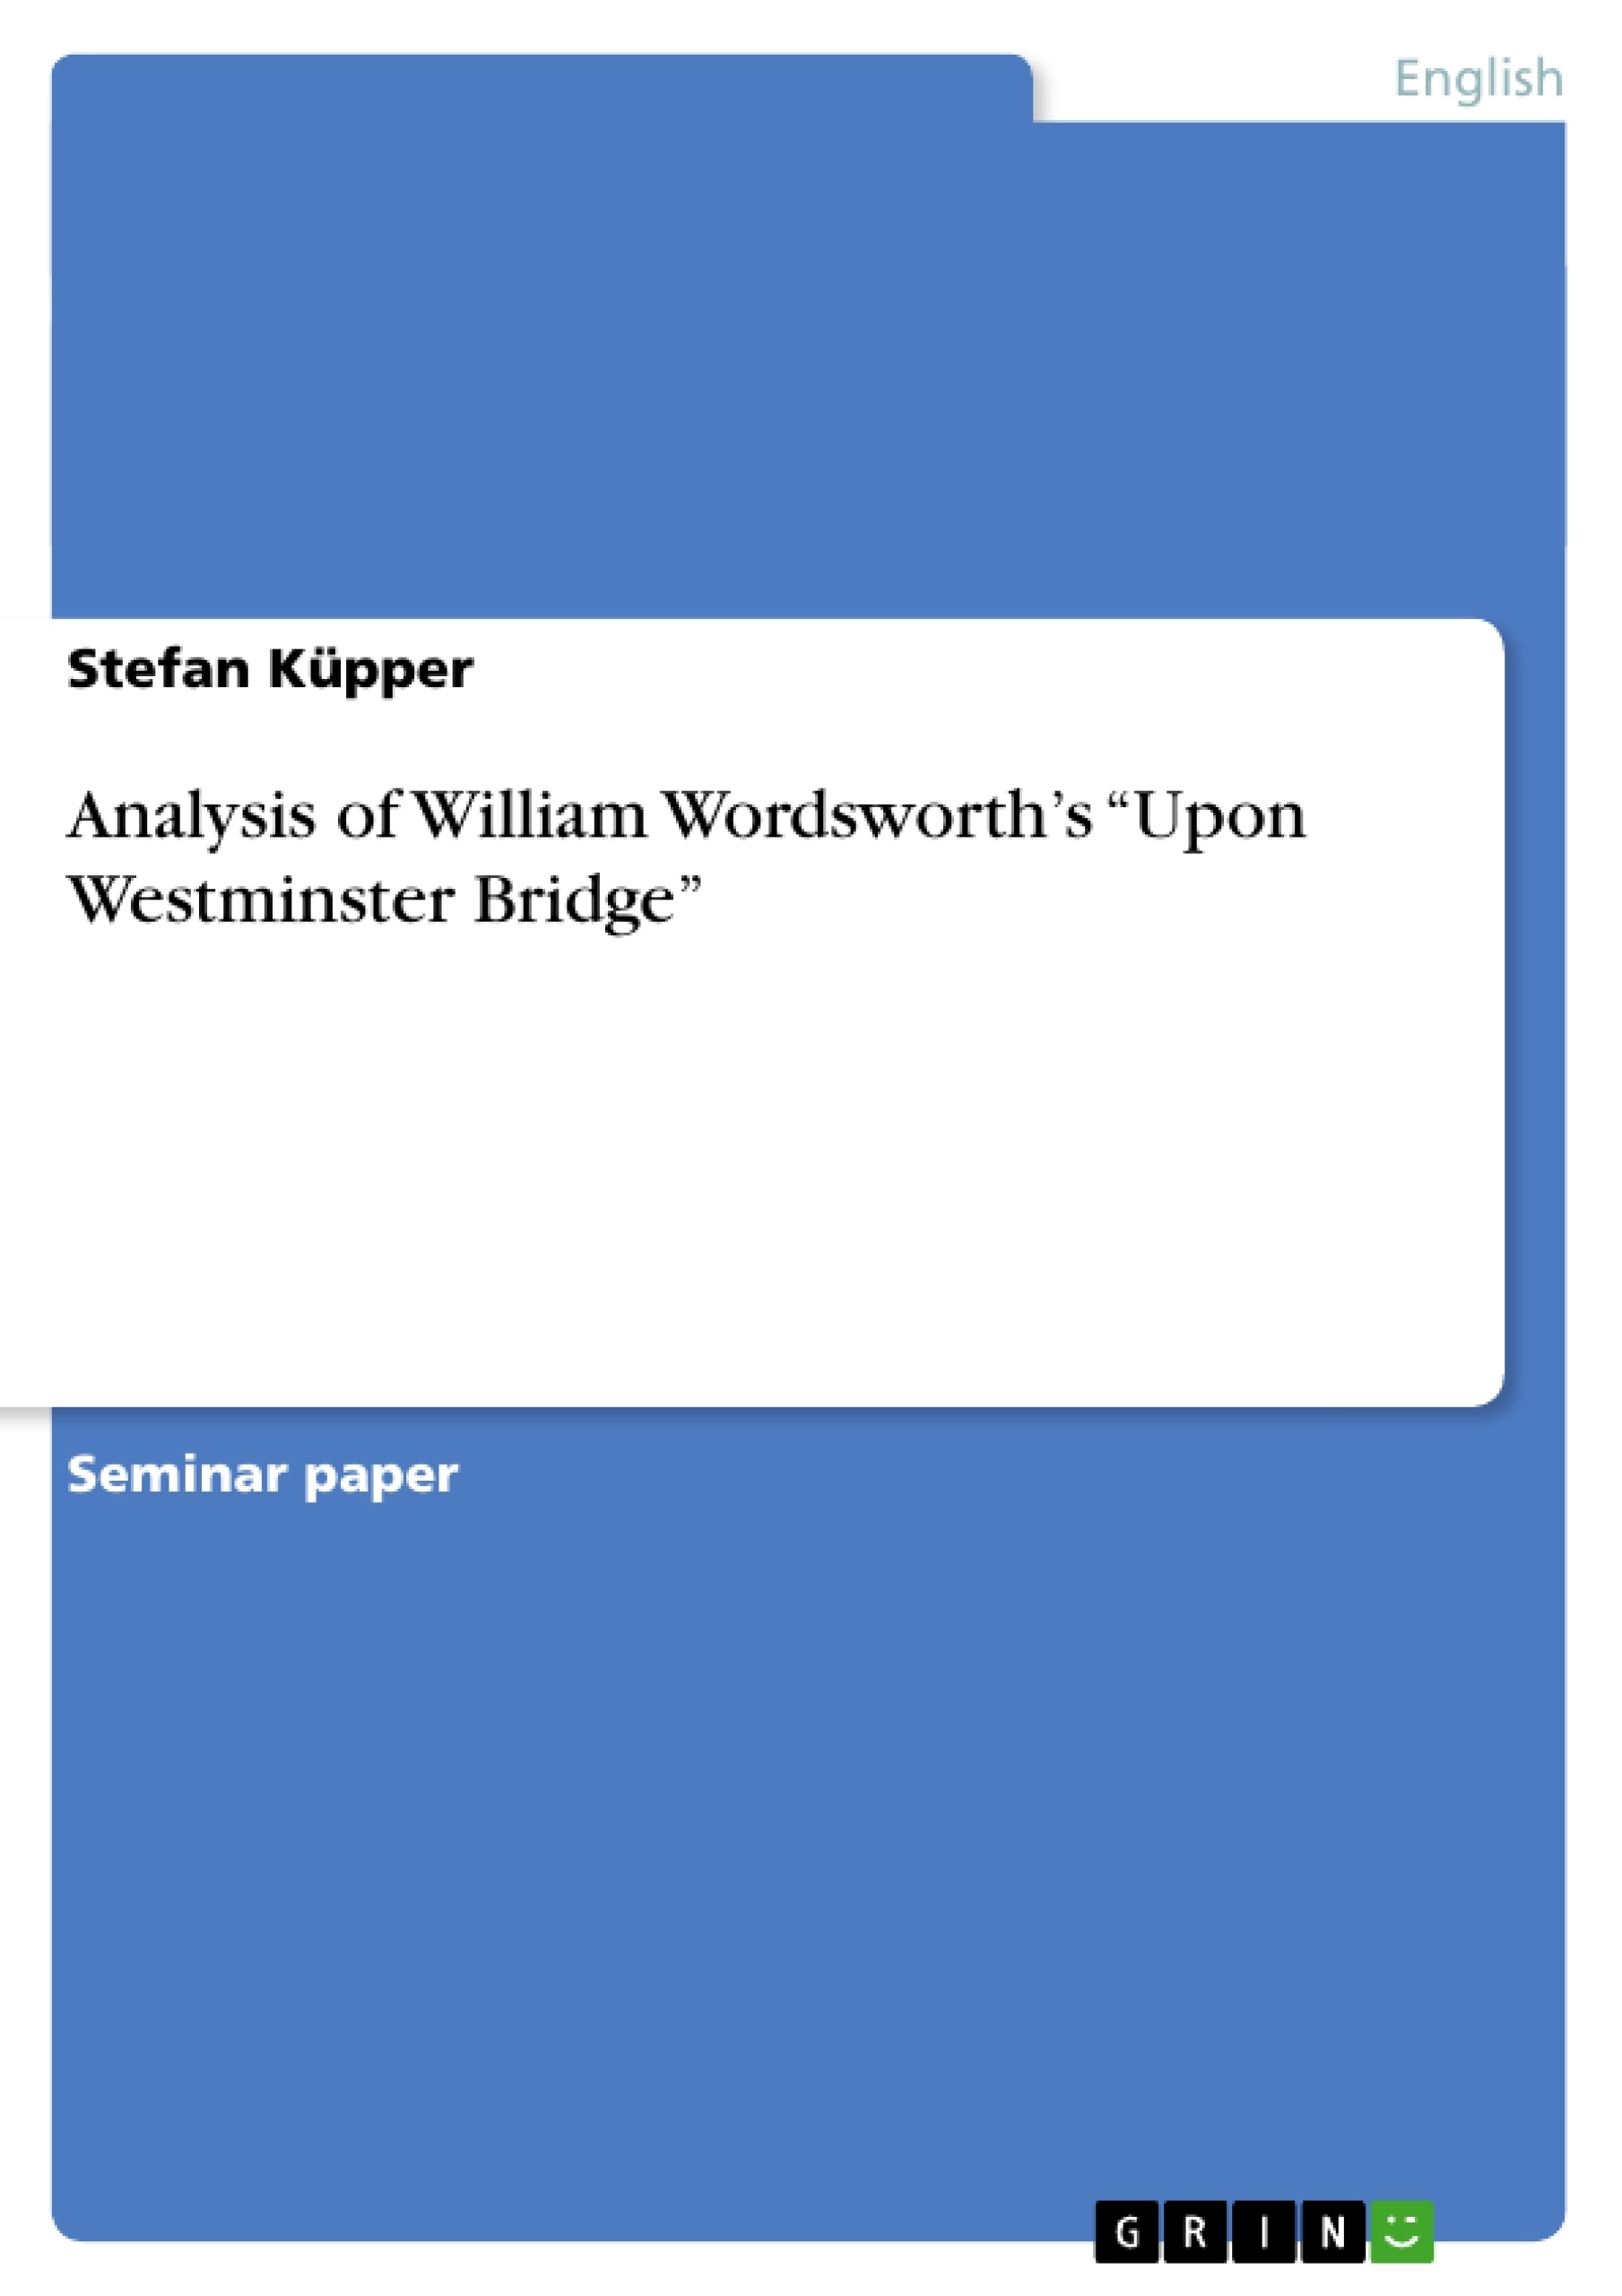 wordsworth westminster bridge poem